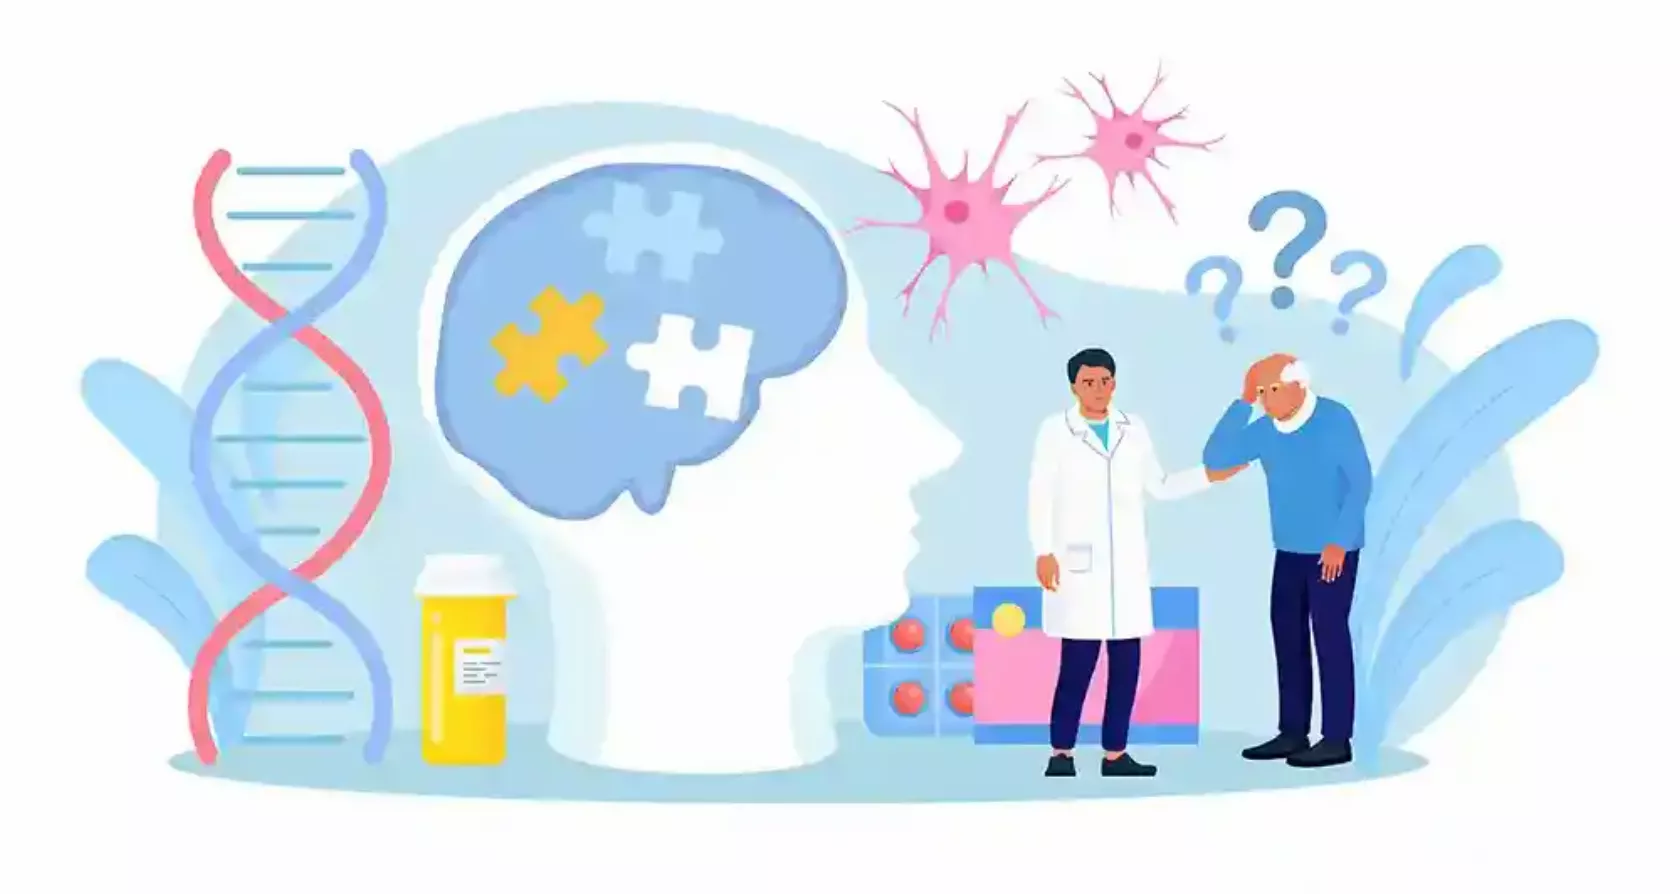 Illustration eines Gehirns, in dem Puzzleteile fehlen, DNA-Spirale, Neuronen, ratloser Mann, Helfer im weißen Kittel und Tabletten-Blister